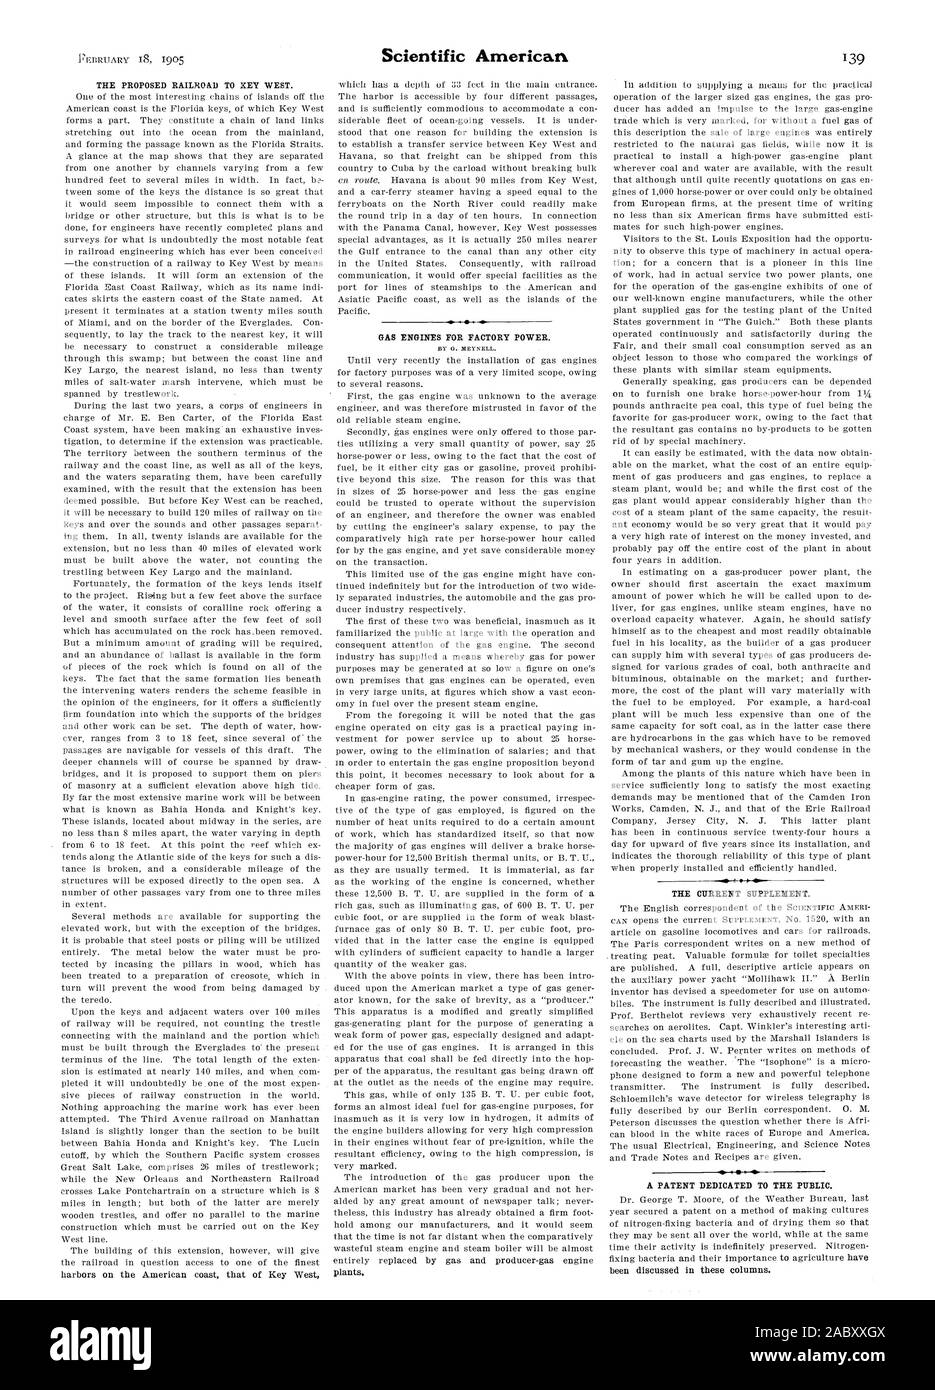 Die aktuelle Ergänzung. Ein PATENT FÜR DIE ÖFFENTLICHKEIT., Scientific American, 1905-02-18 Stockfoto